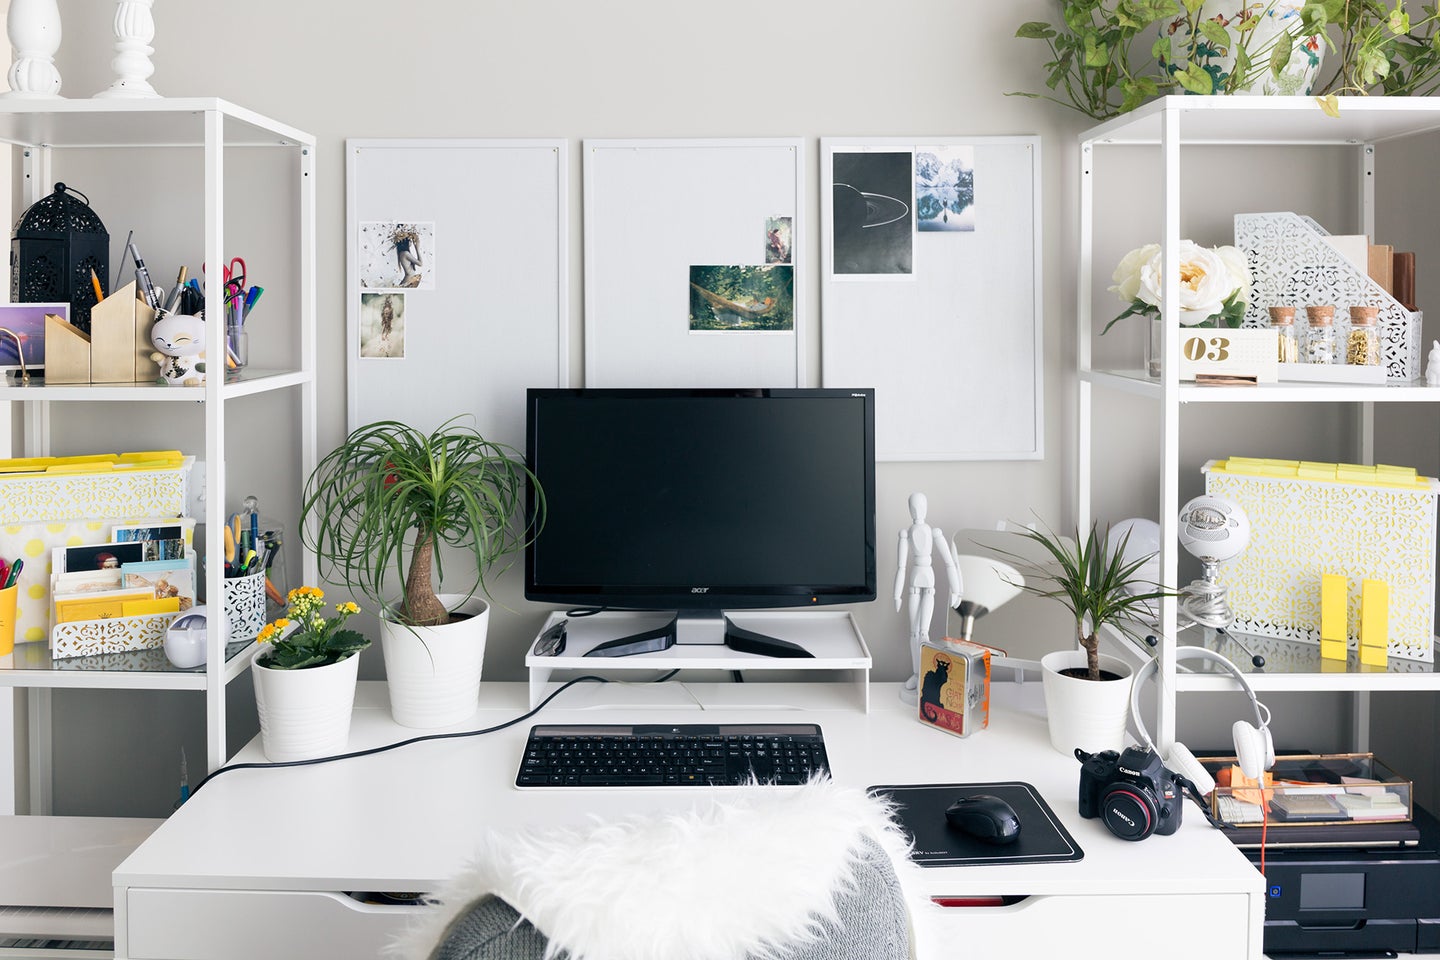 Best desk organizer: Essential office tools & supplies